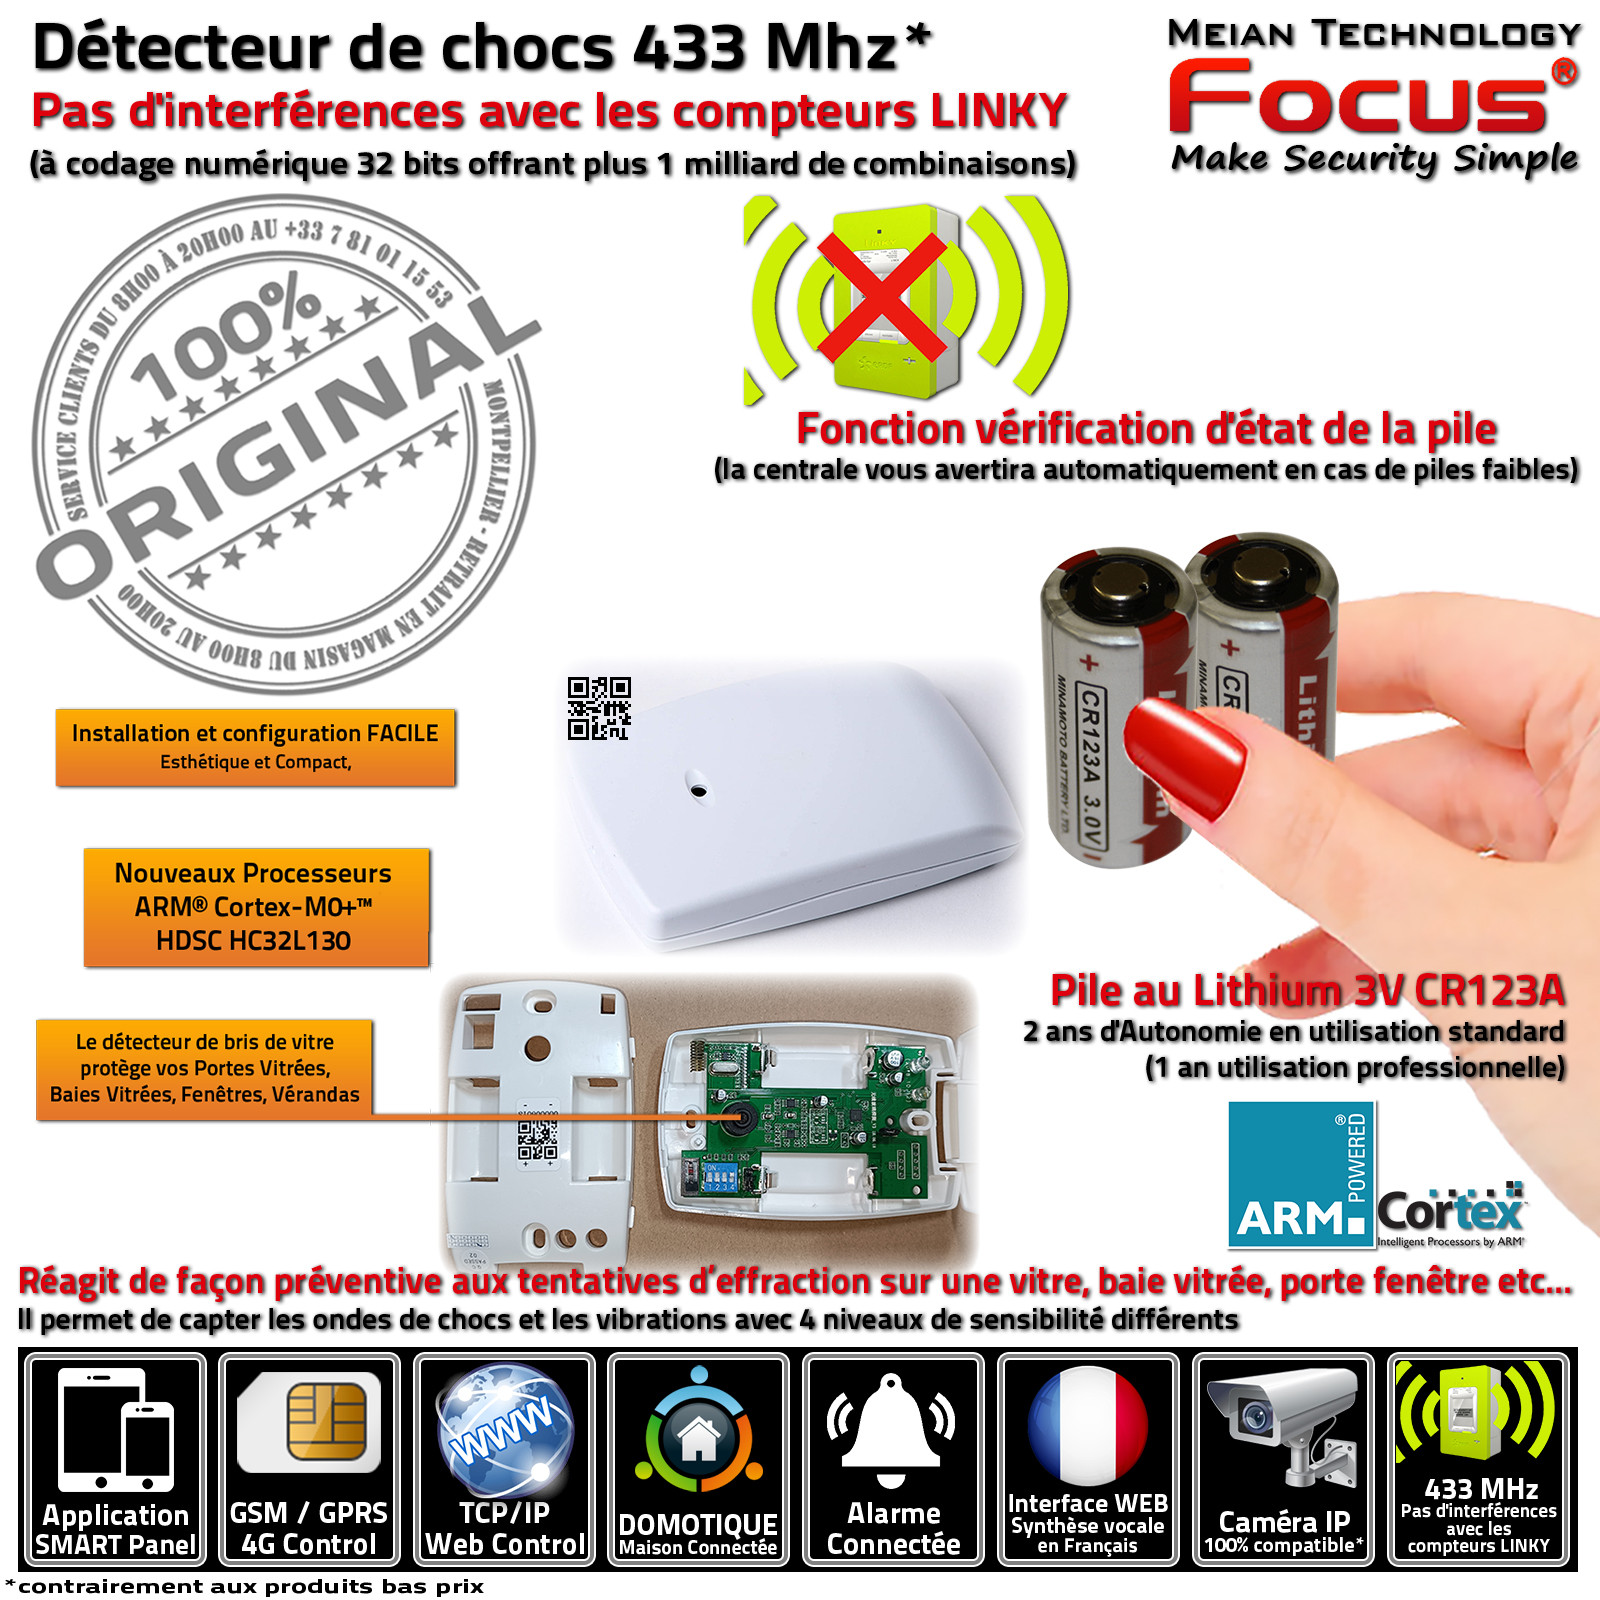 Détection Bris de vitre MD-343R Sans Fil Sonde Domotique Alarme FOCUS Meian Système Sécurité Connecté Réseau Ethernet 433MHz GSM